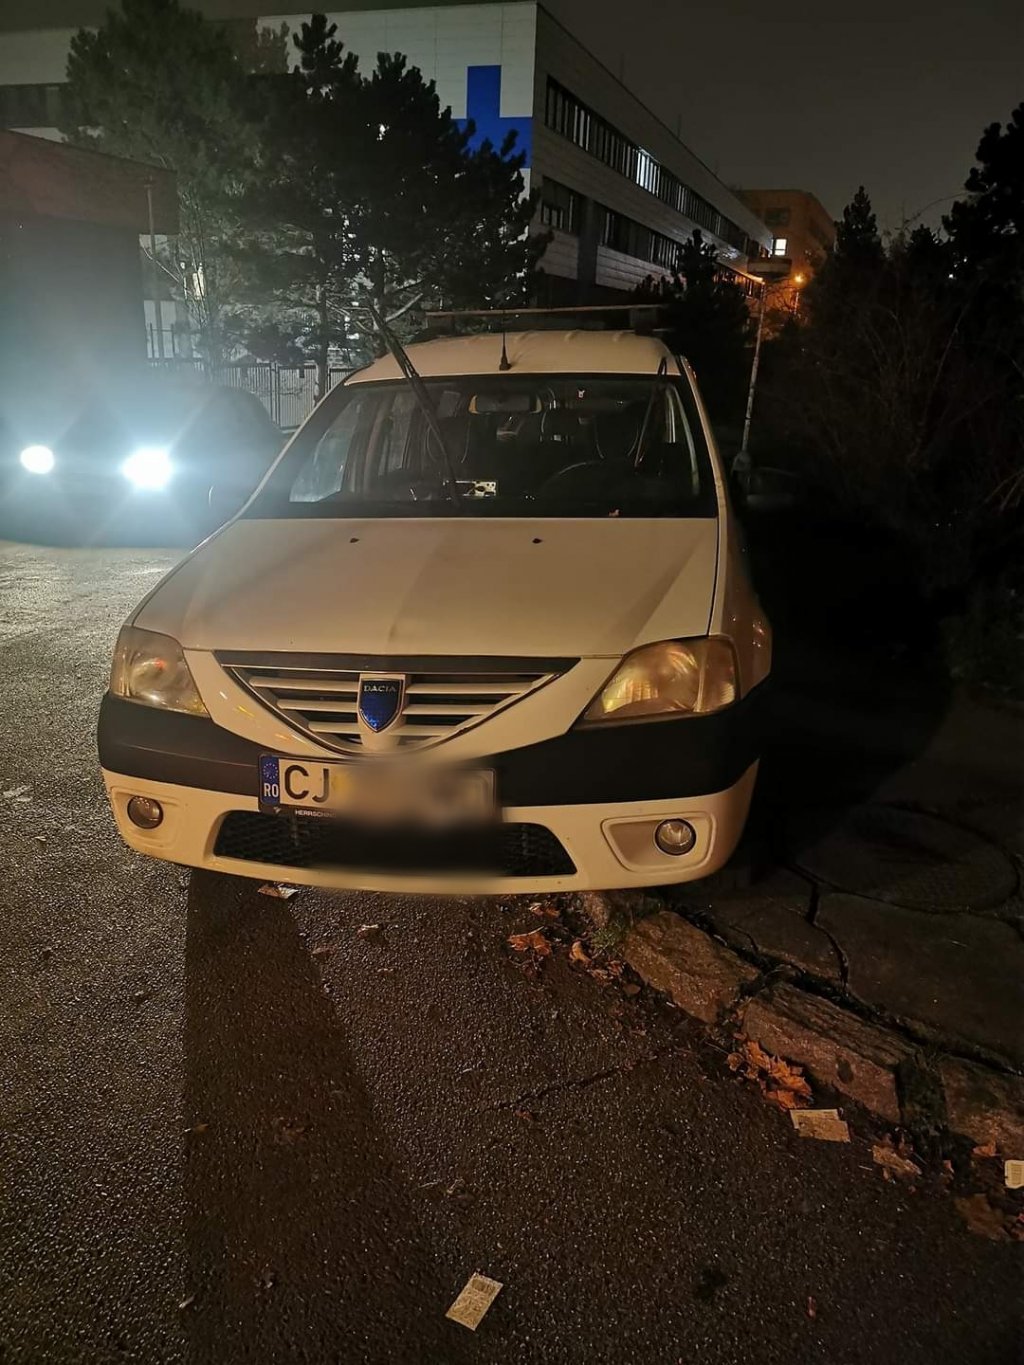 Un șofer din Cluj a blocat intrarea unui hotel din Praga: "Ne faci de râs"